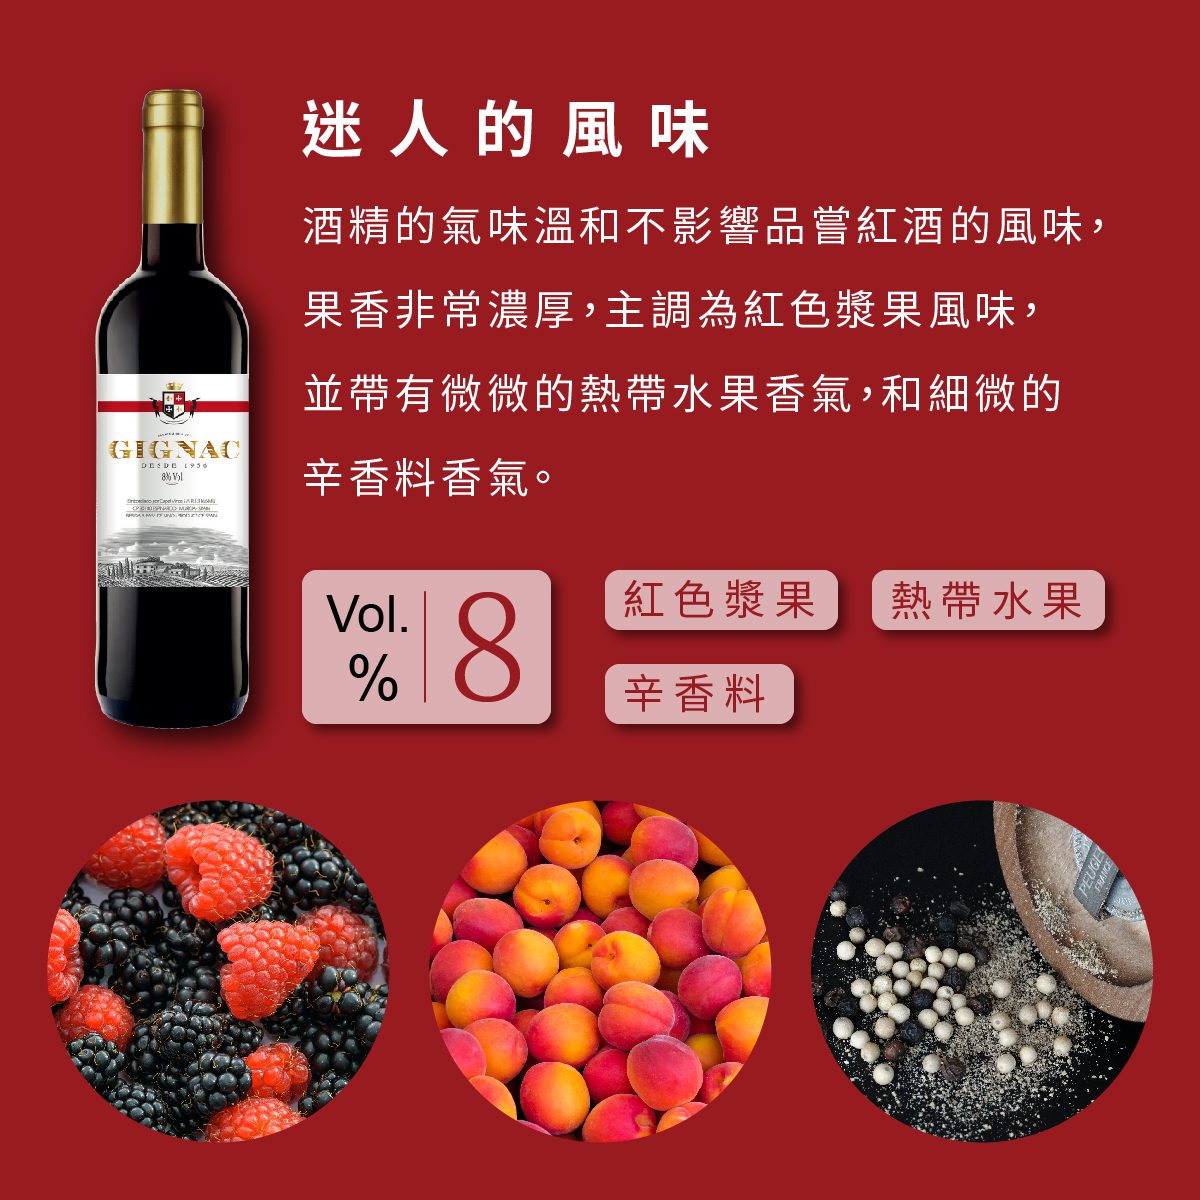 酒精的氣味溫和不影響品嘗紅酒的風味， 果香非常濃厚，主調為紅色漿果風味， 並帶有微微的熱帶水果香氣，和細微的 辛香料香氣。